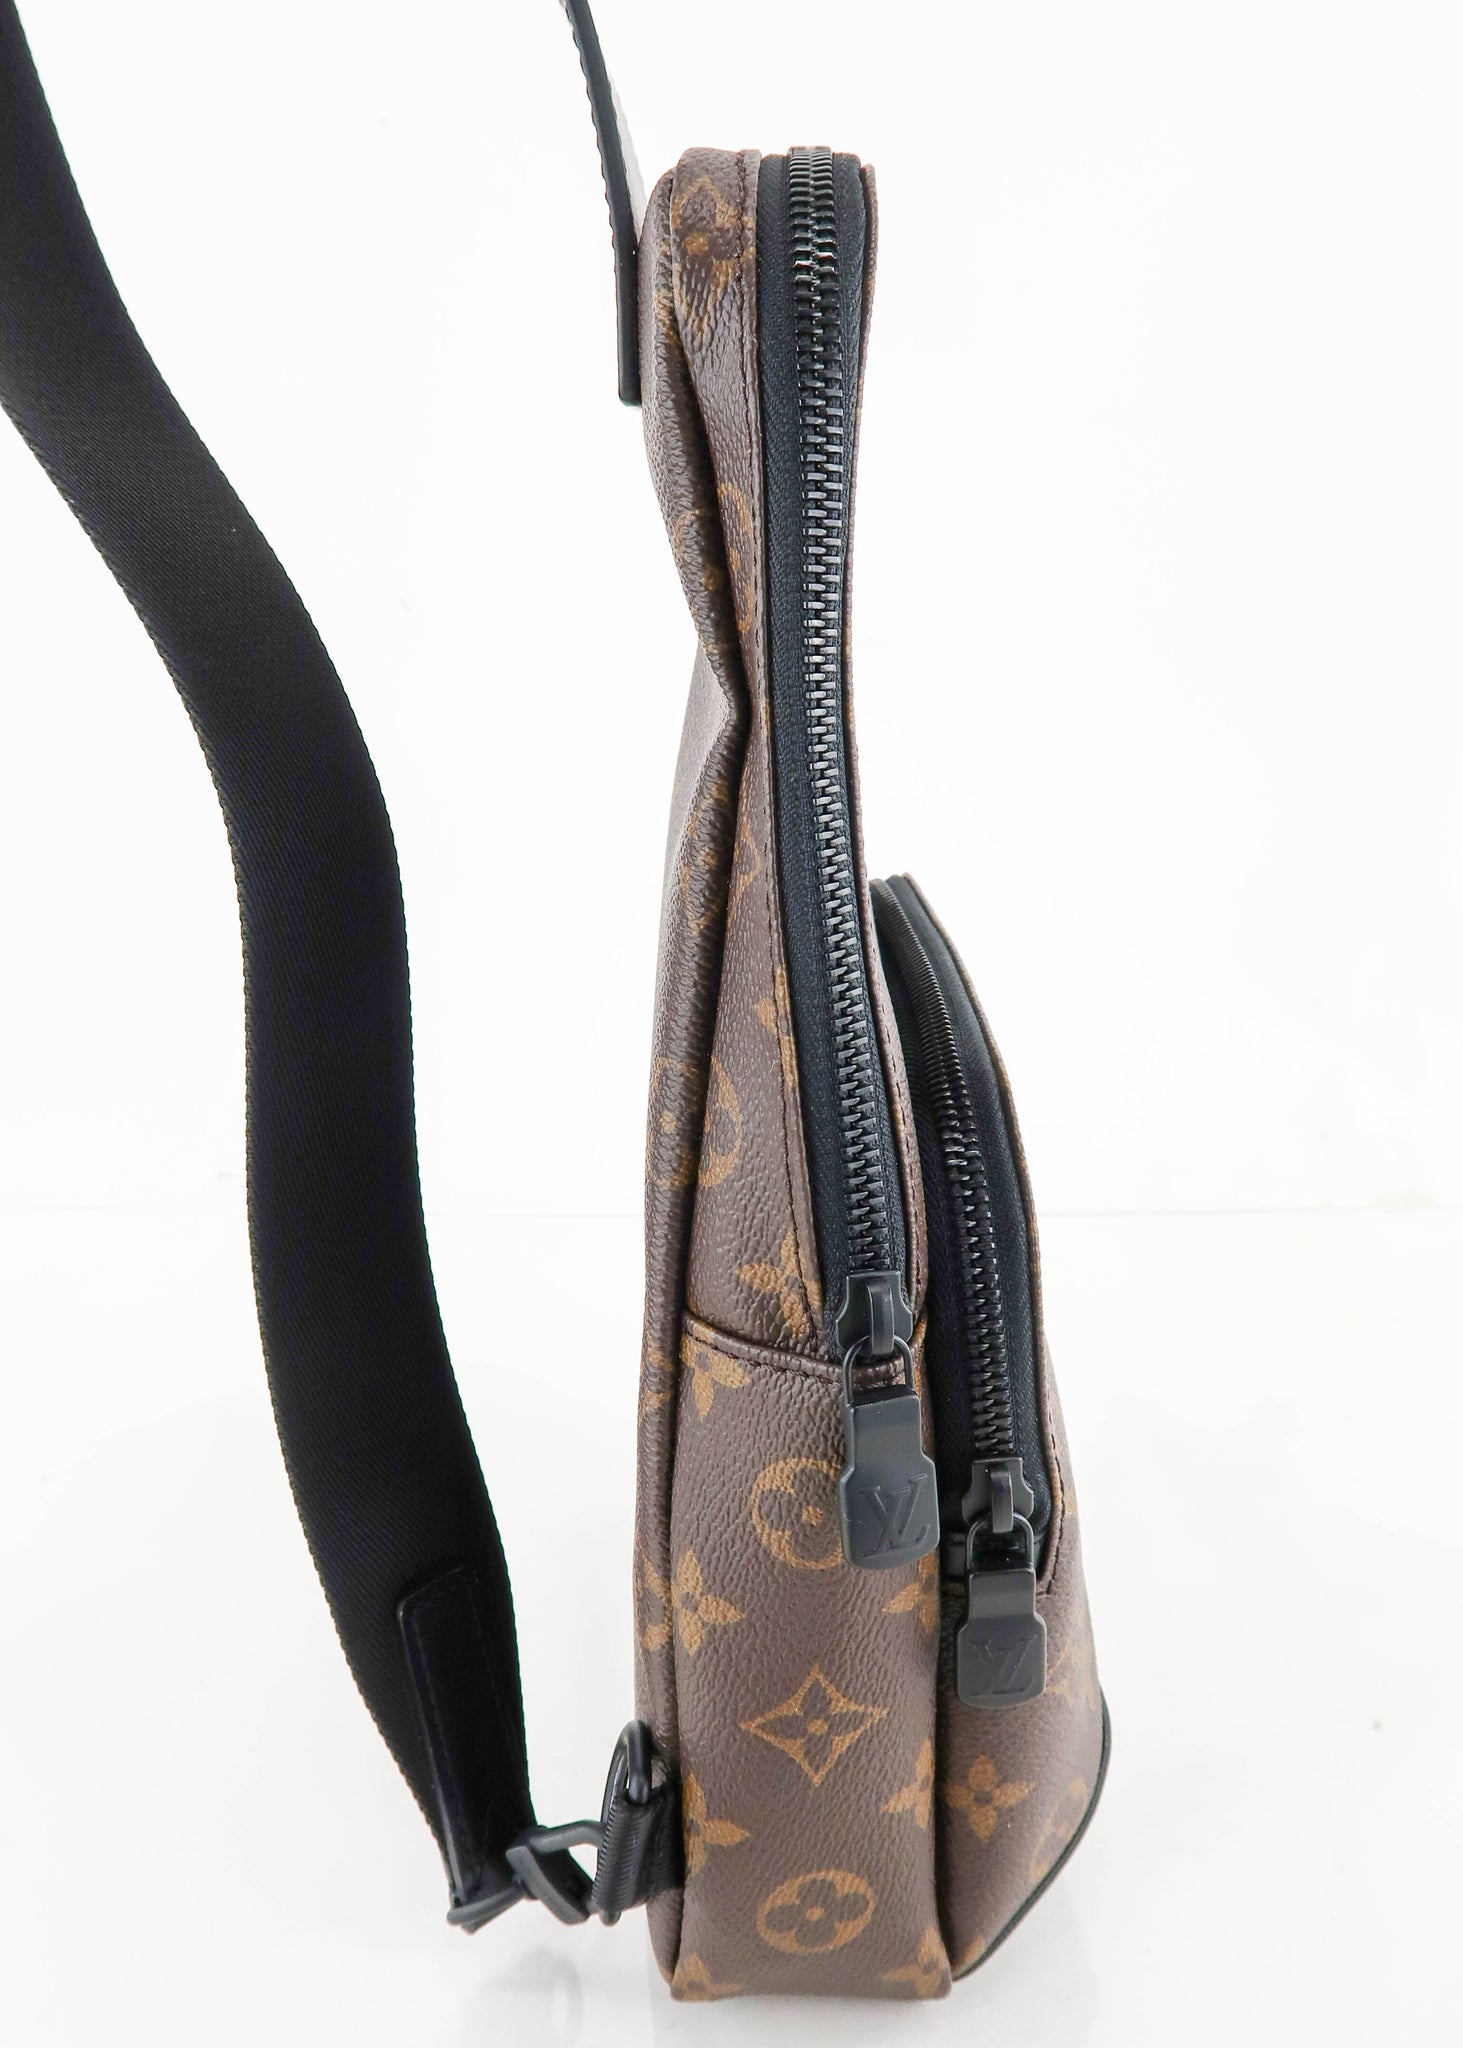 Louis Vuitton Avenue Sling Bag Macassar Monogram Canvas - ShopStyle